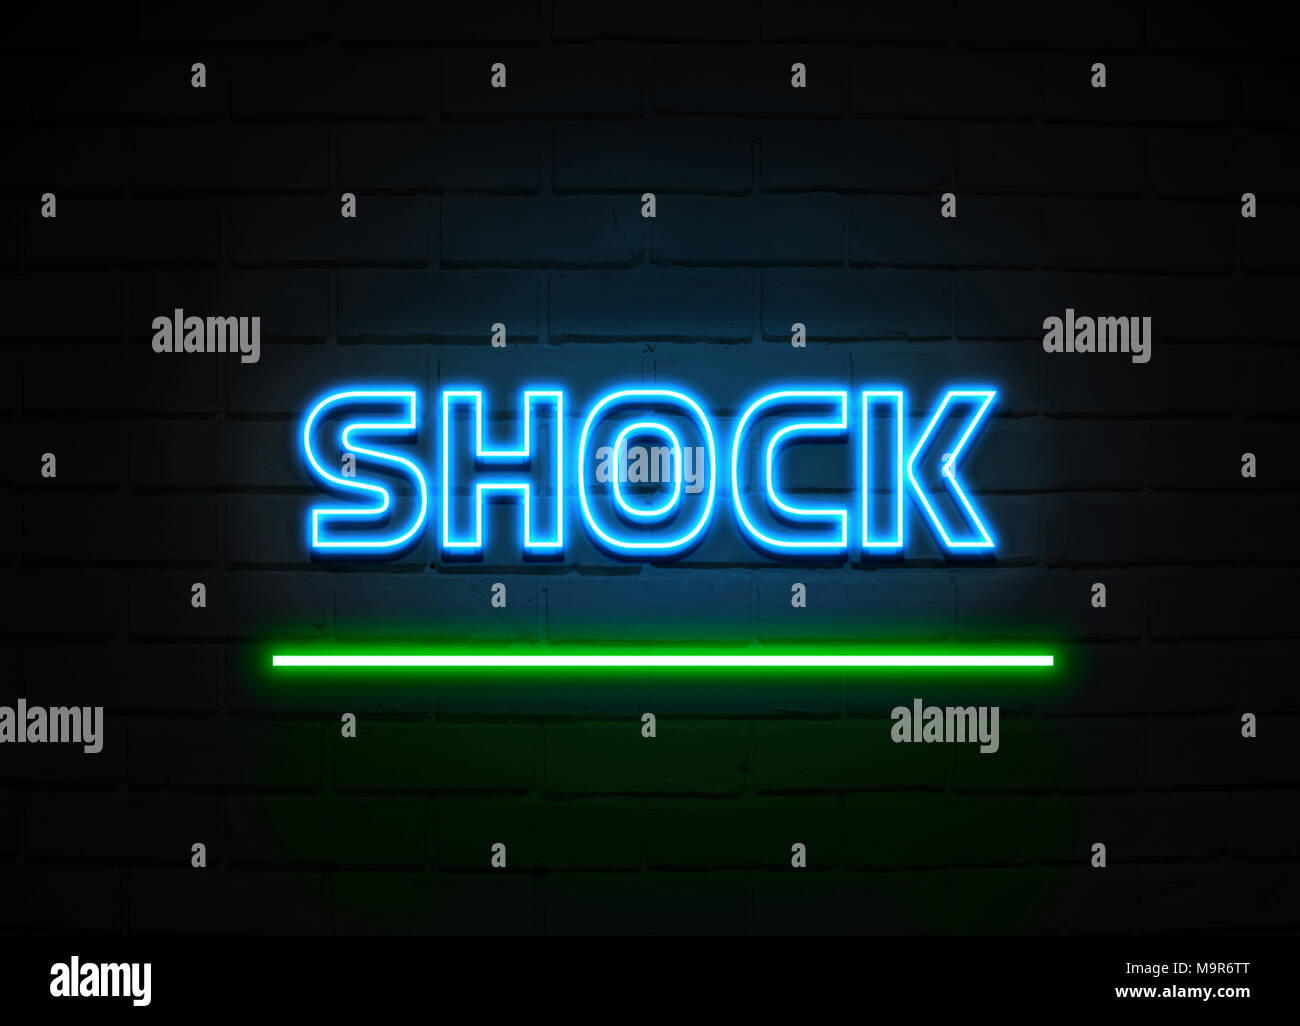 Schock Leuchtreklame - glühende Leuchtreklame auf brickwall Wand - 3D-Royalty Free Stock Illustration dargestellt. Stockfoto